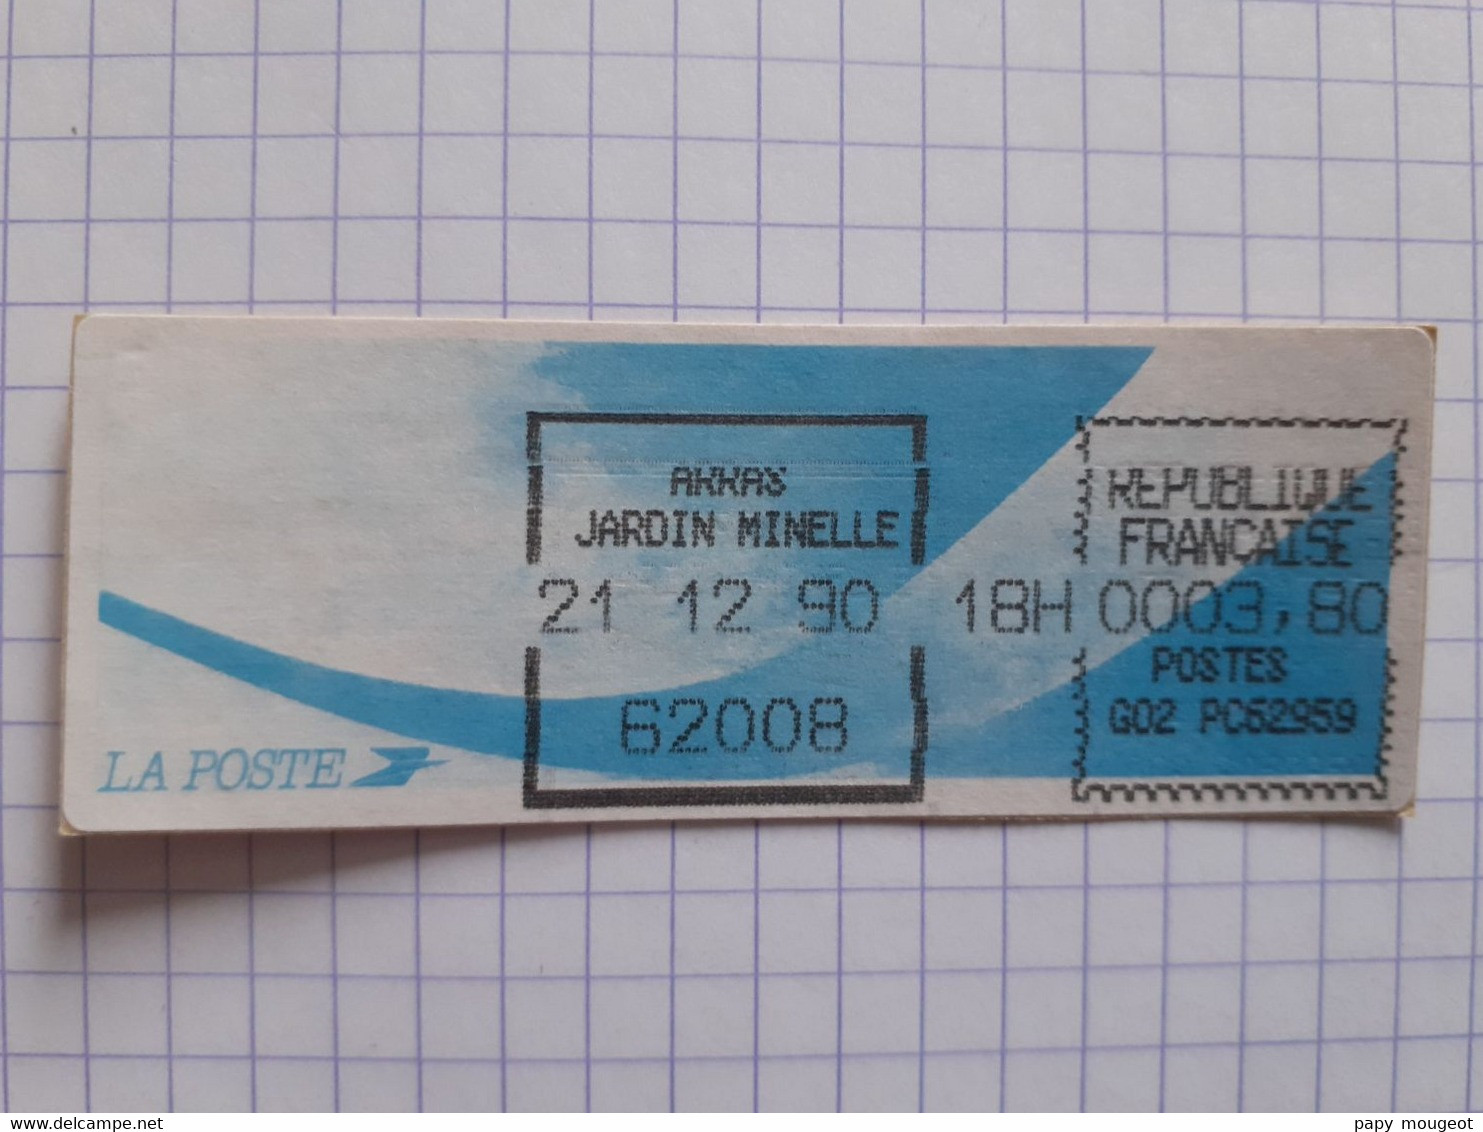 Arras Jardin Minelle 62008 - 21-12-90 - G02 PC62959 Tarif 3.80 - Encre Noire Imprimante Dérèglée - 1988 Type « Comète »